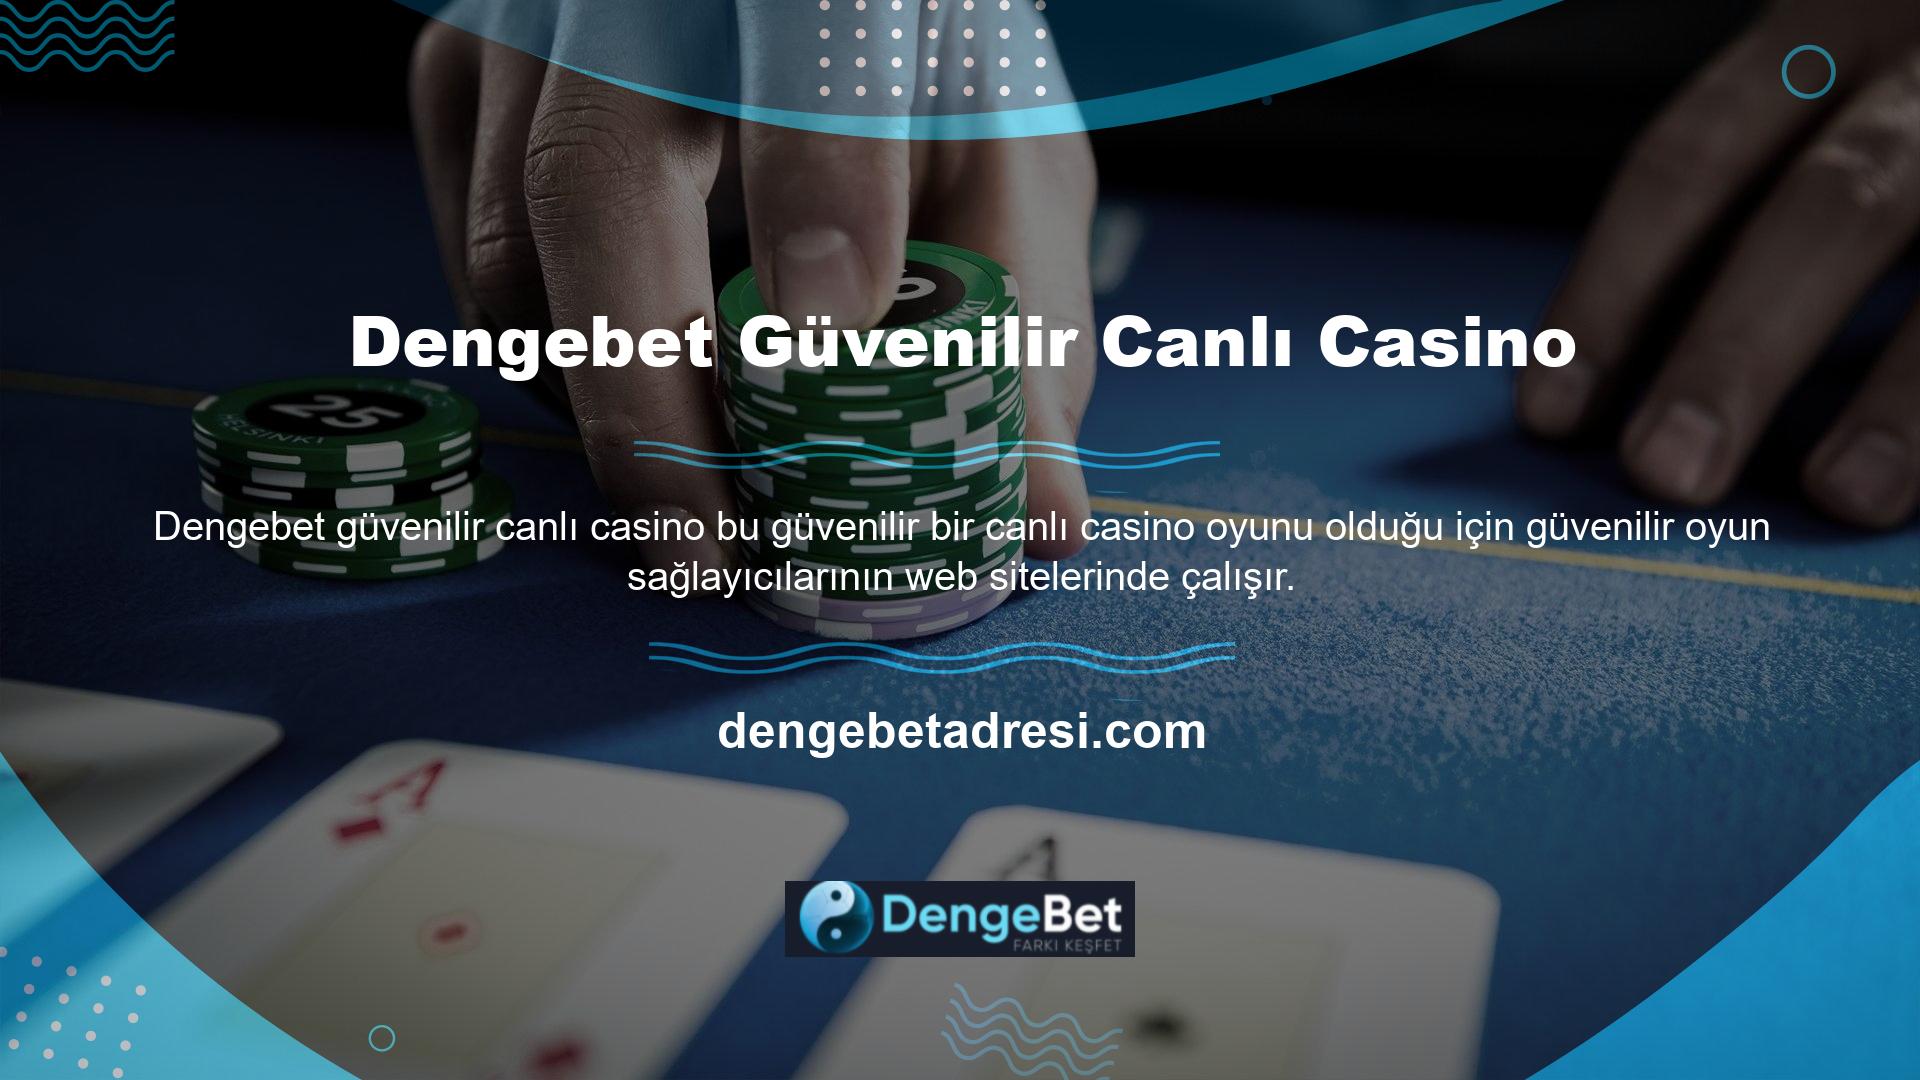 Başta Netent Live, Ezugi olmak üzere güvenilir casino oyun sağlayıcılarının oyunlarını içerir